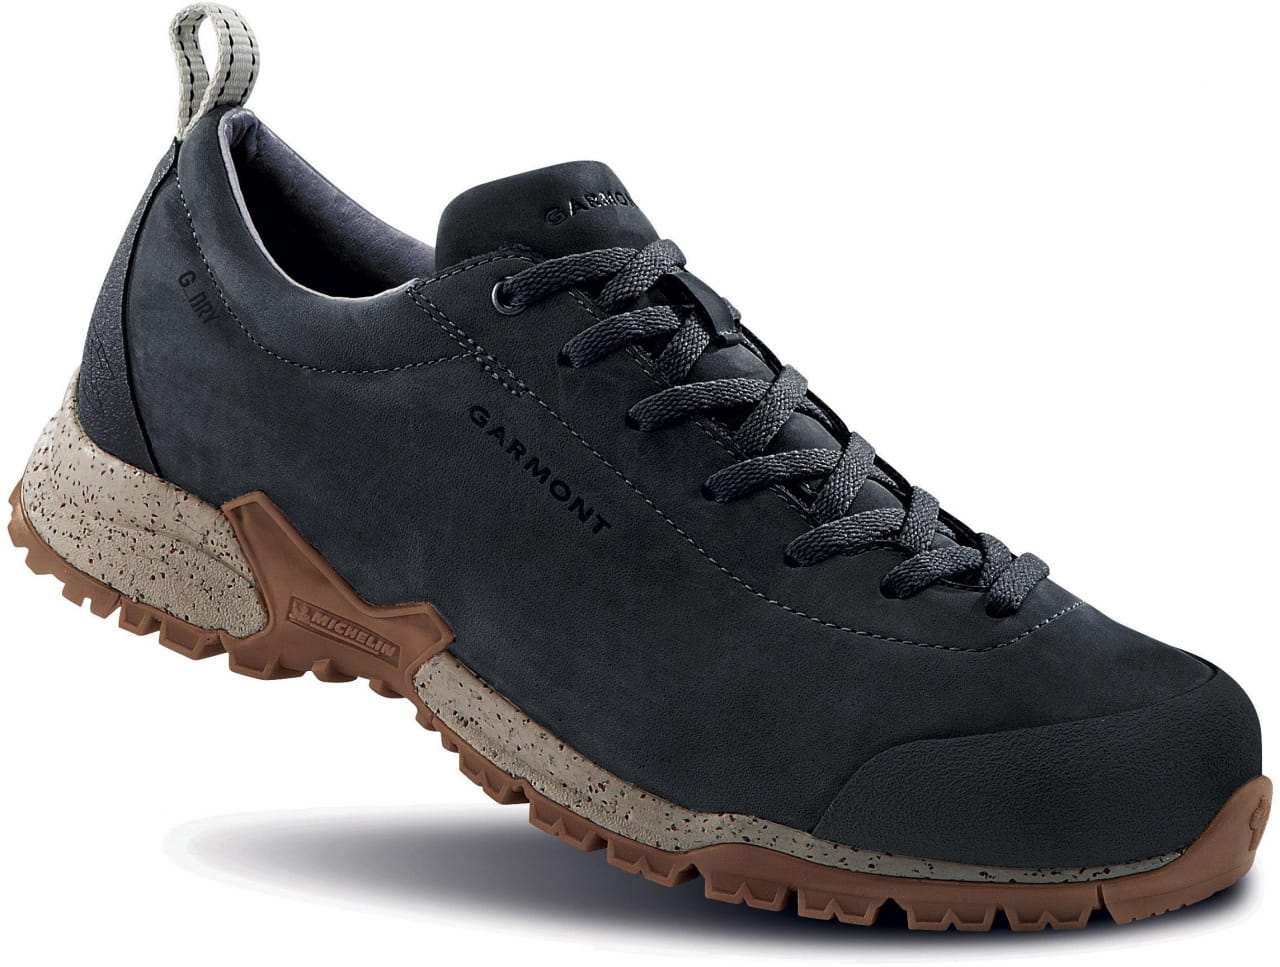 Outdoor-Schuhe für Männer Garmont Tikal 4S G-Dry